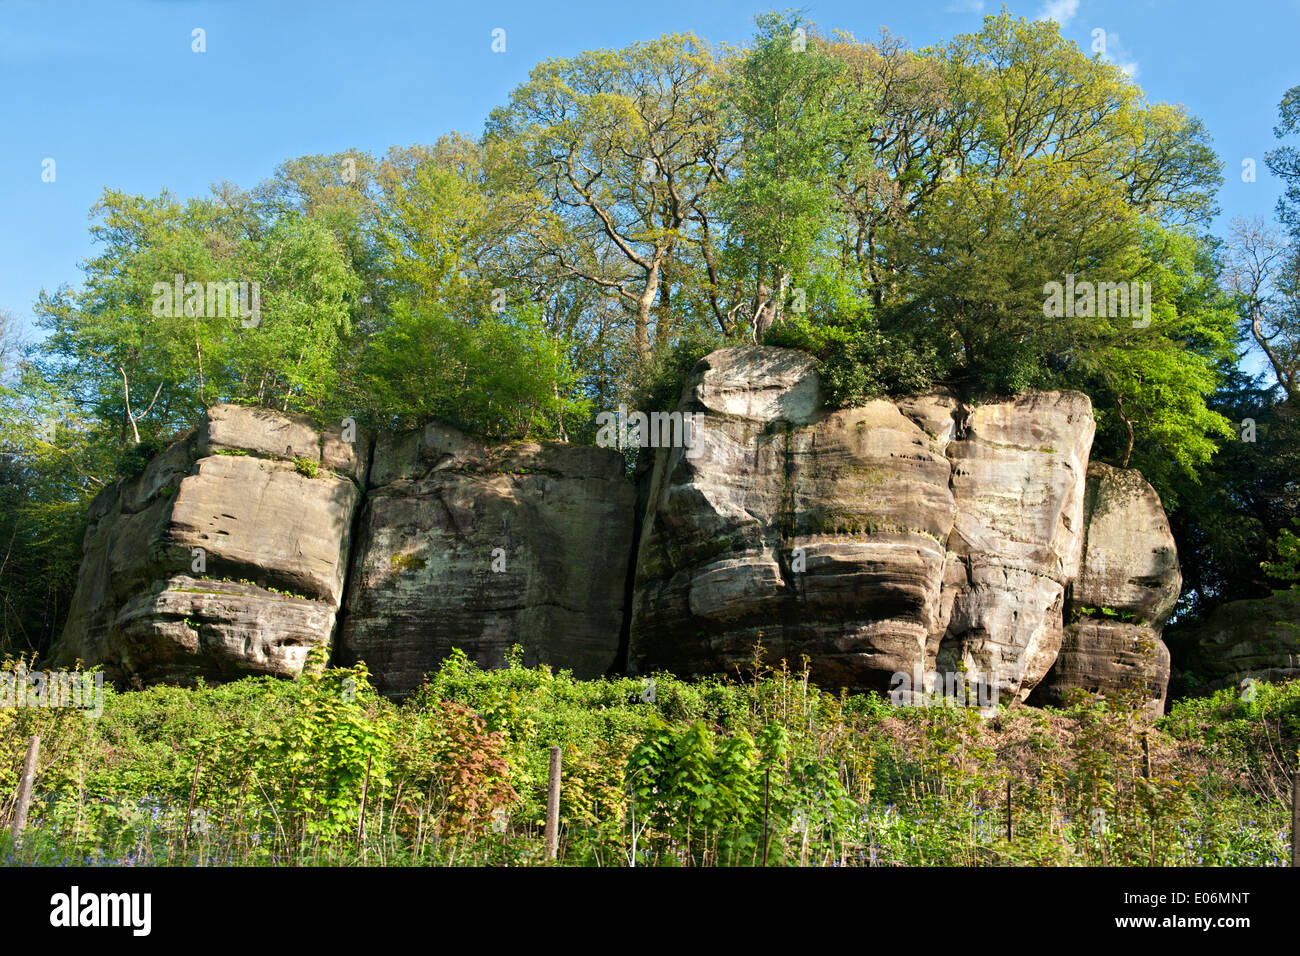 Afloramiento de roca de piedra arenisca, rocas altas en Tunbridge Wells, UK Foto de stock